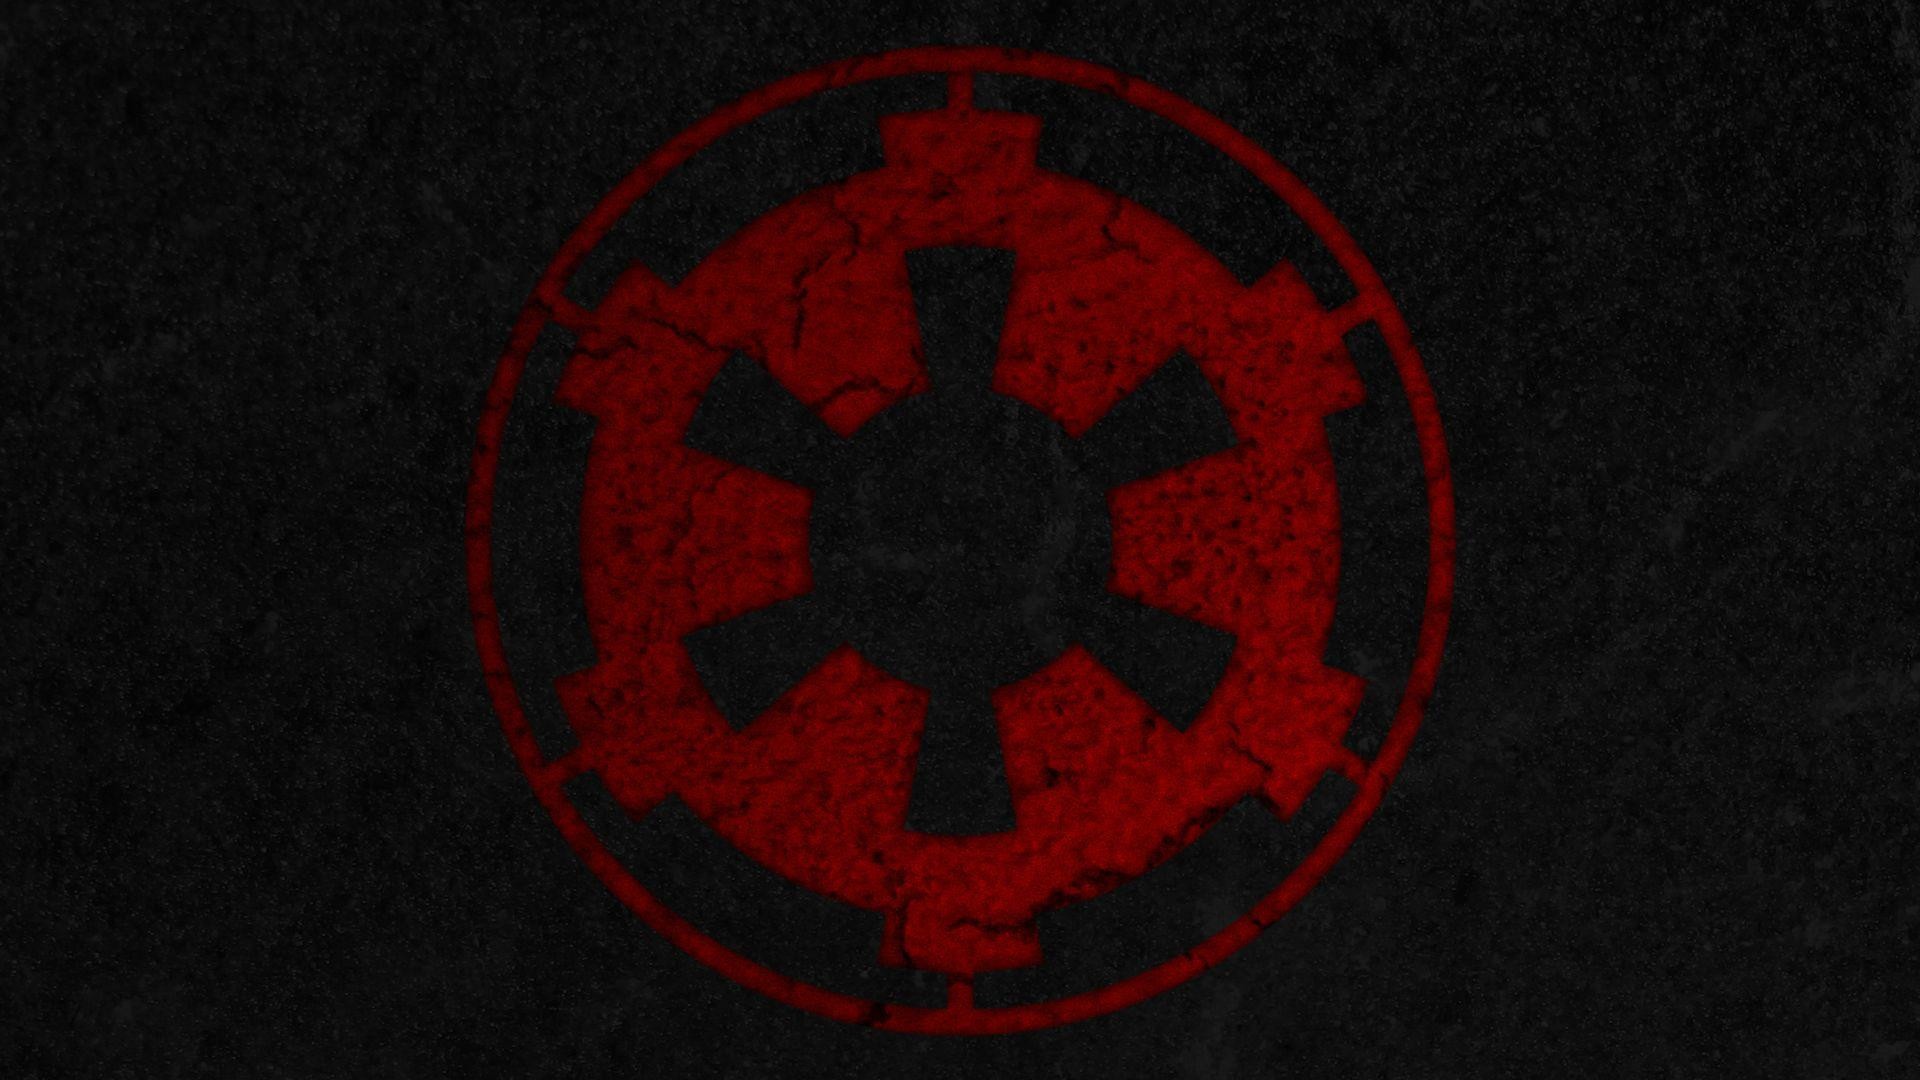 Star Wars Empire Logo Wallpaper Wallpapersafari. Download